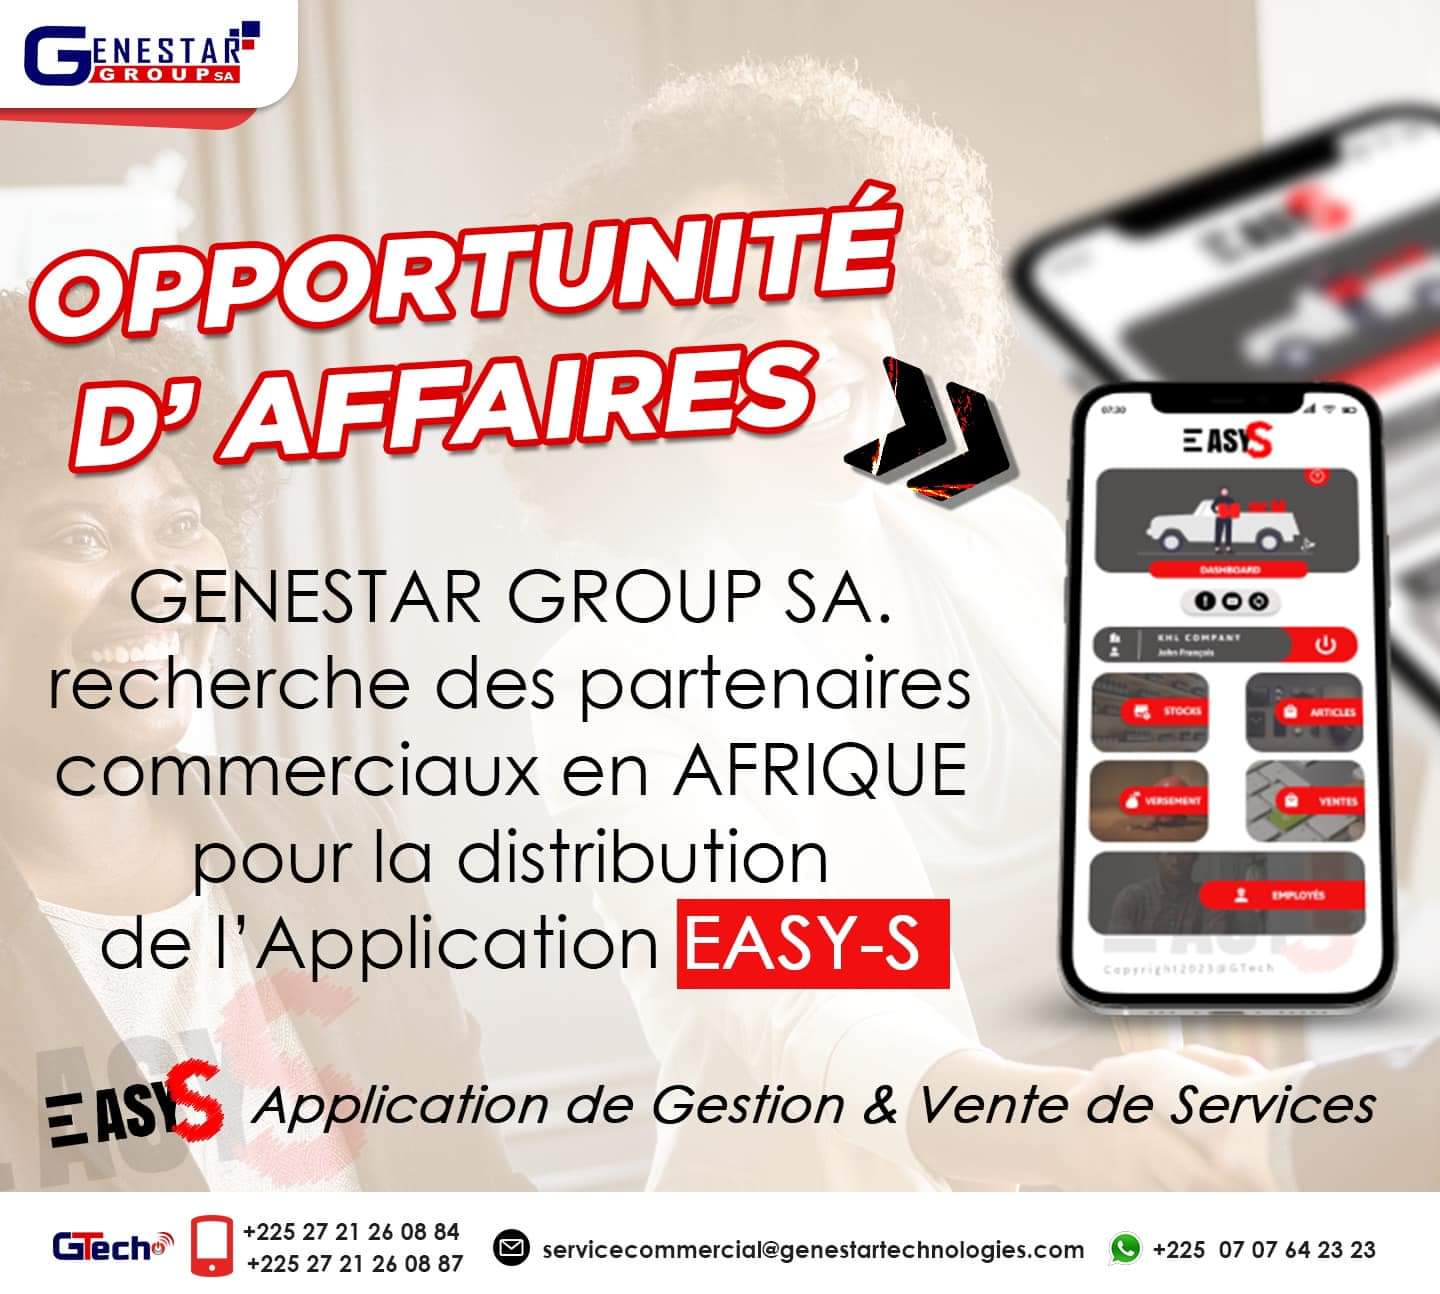 Genestar GROUP recherche des commerciaux en Afrique pour la distribution de son application Easy-S